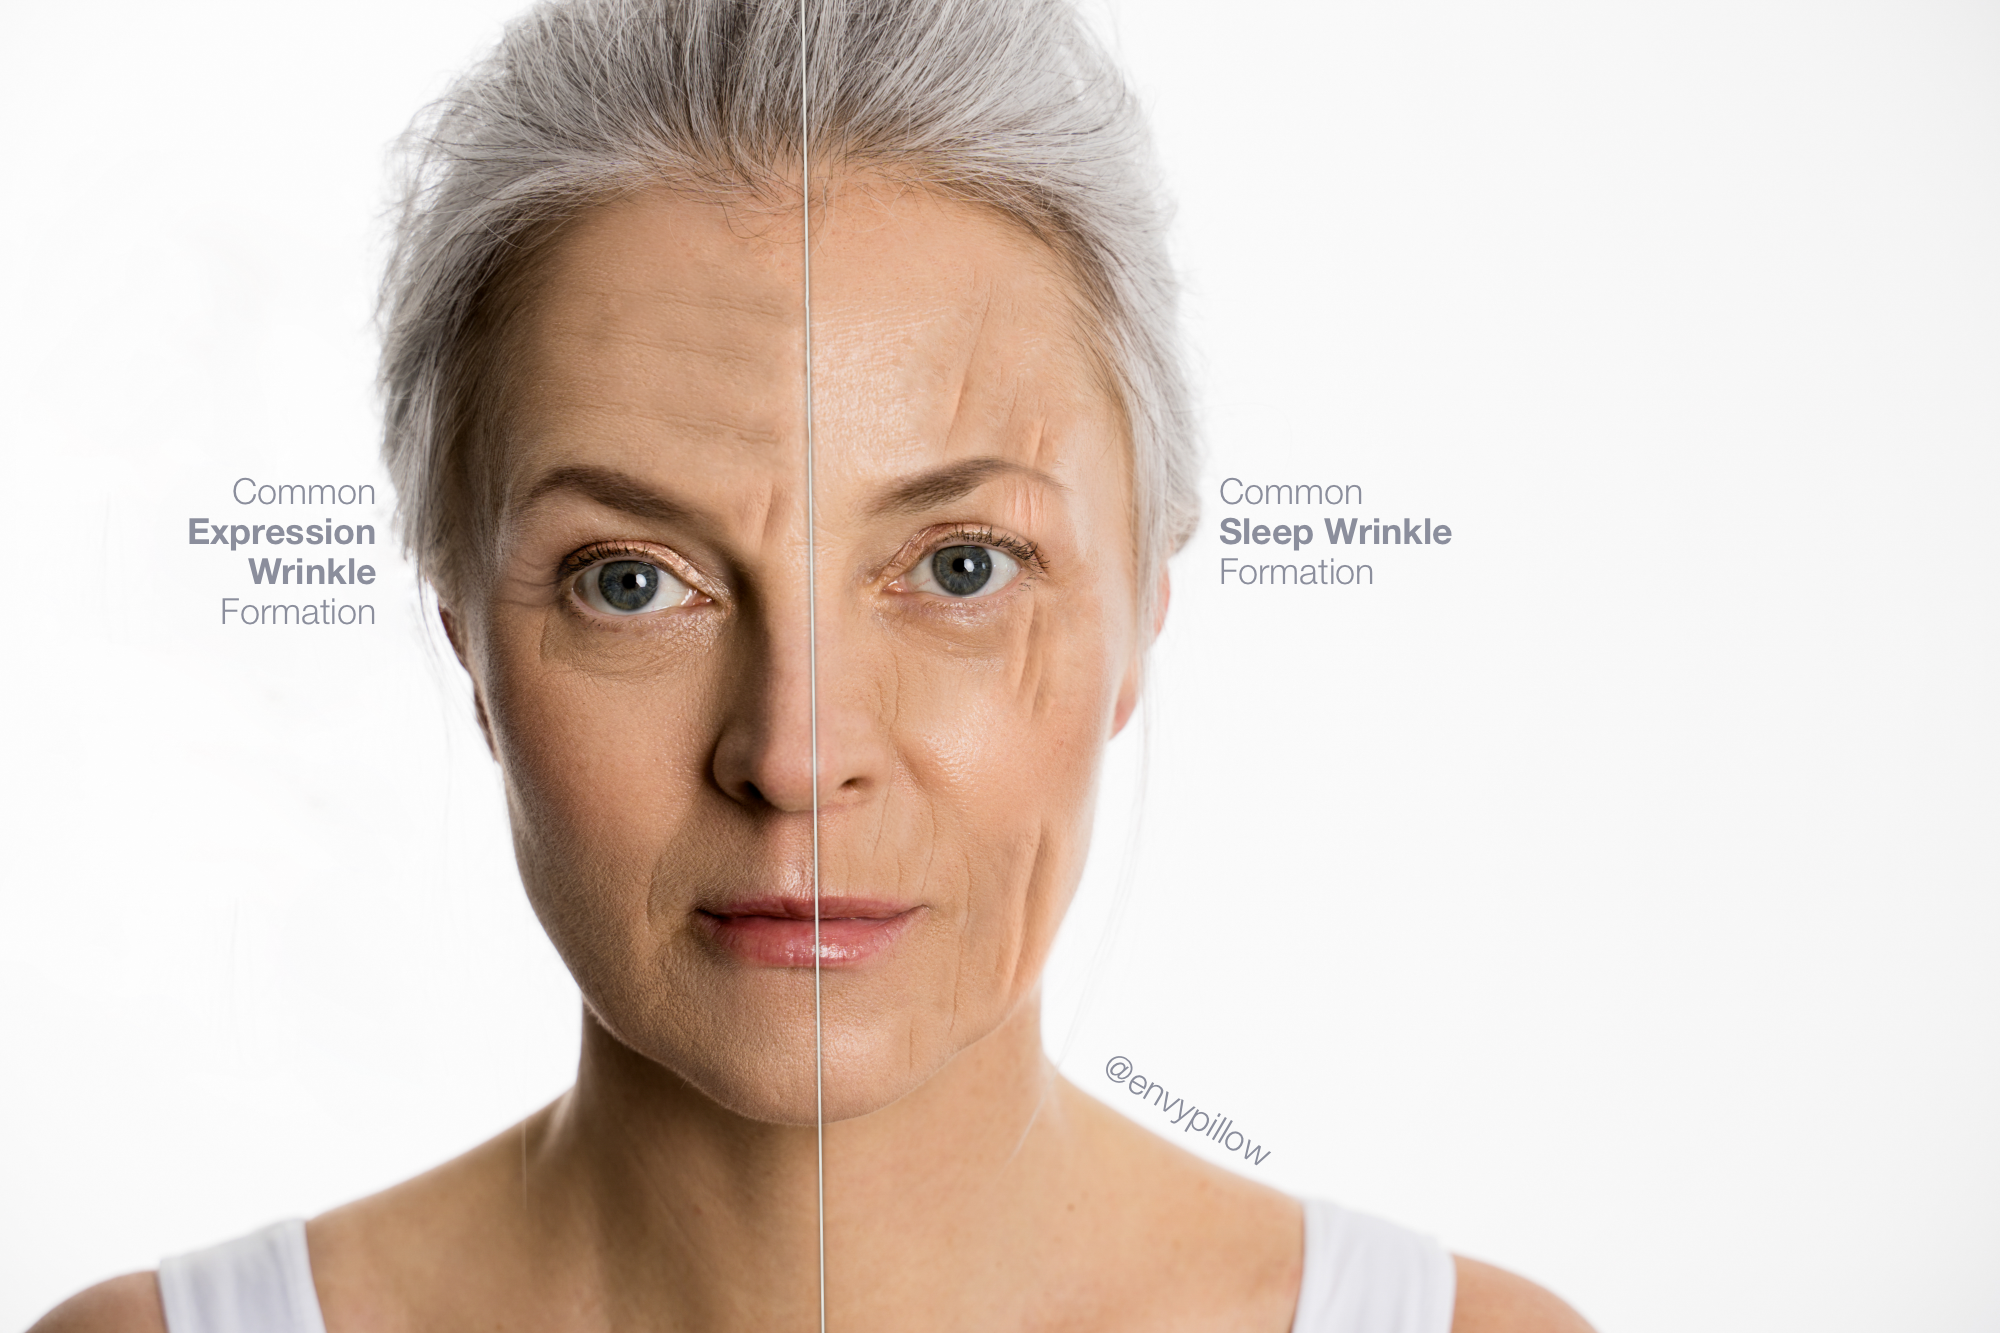 Aging Wrinkles or Sleep Wrinkles Cranston Side To Side